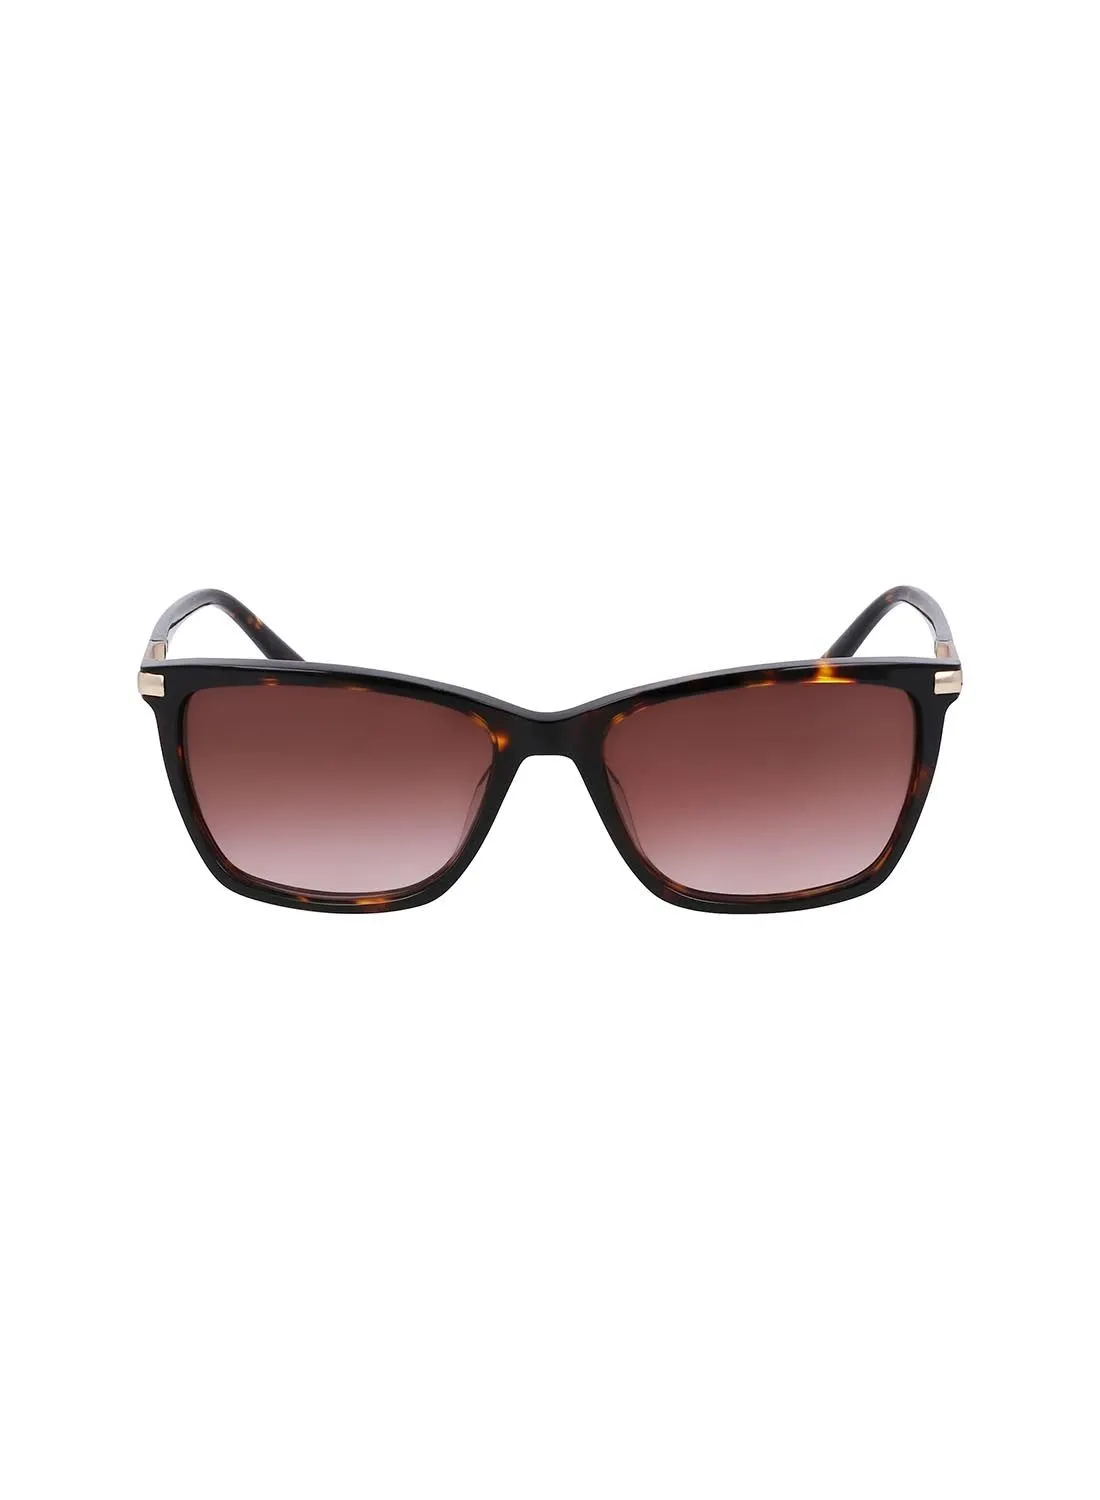 DKNY UV Rays Protection Eyewear Sunglasses DK539S-237-5516